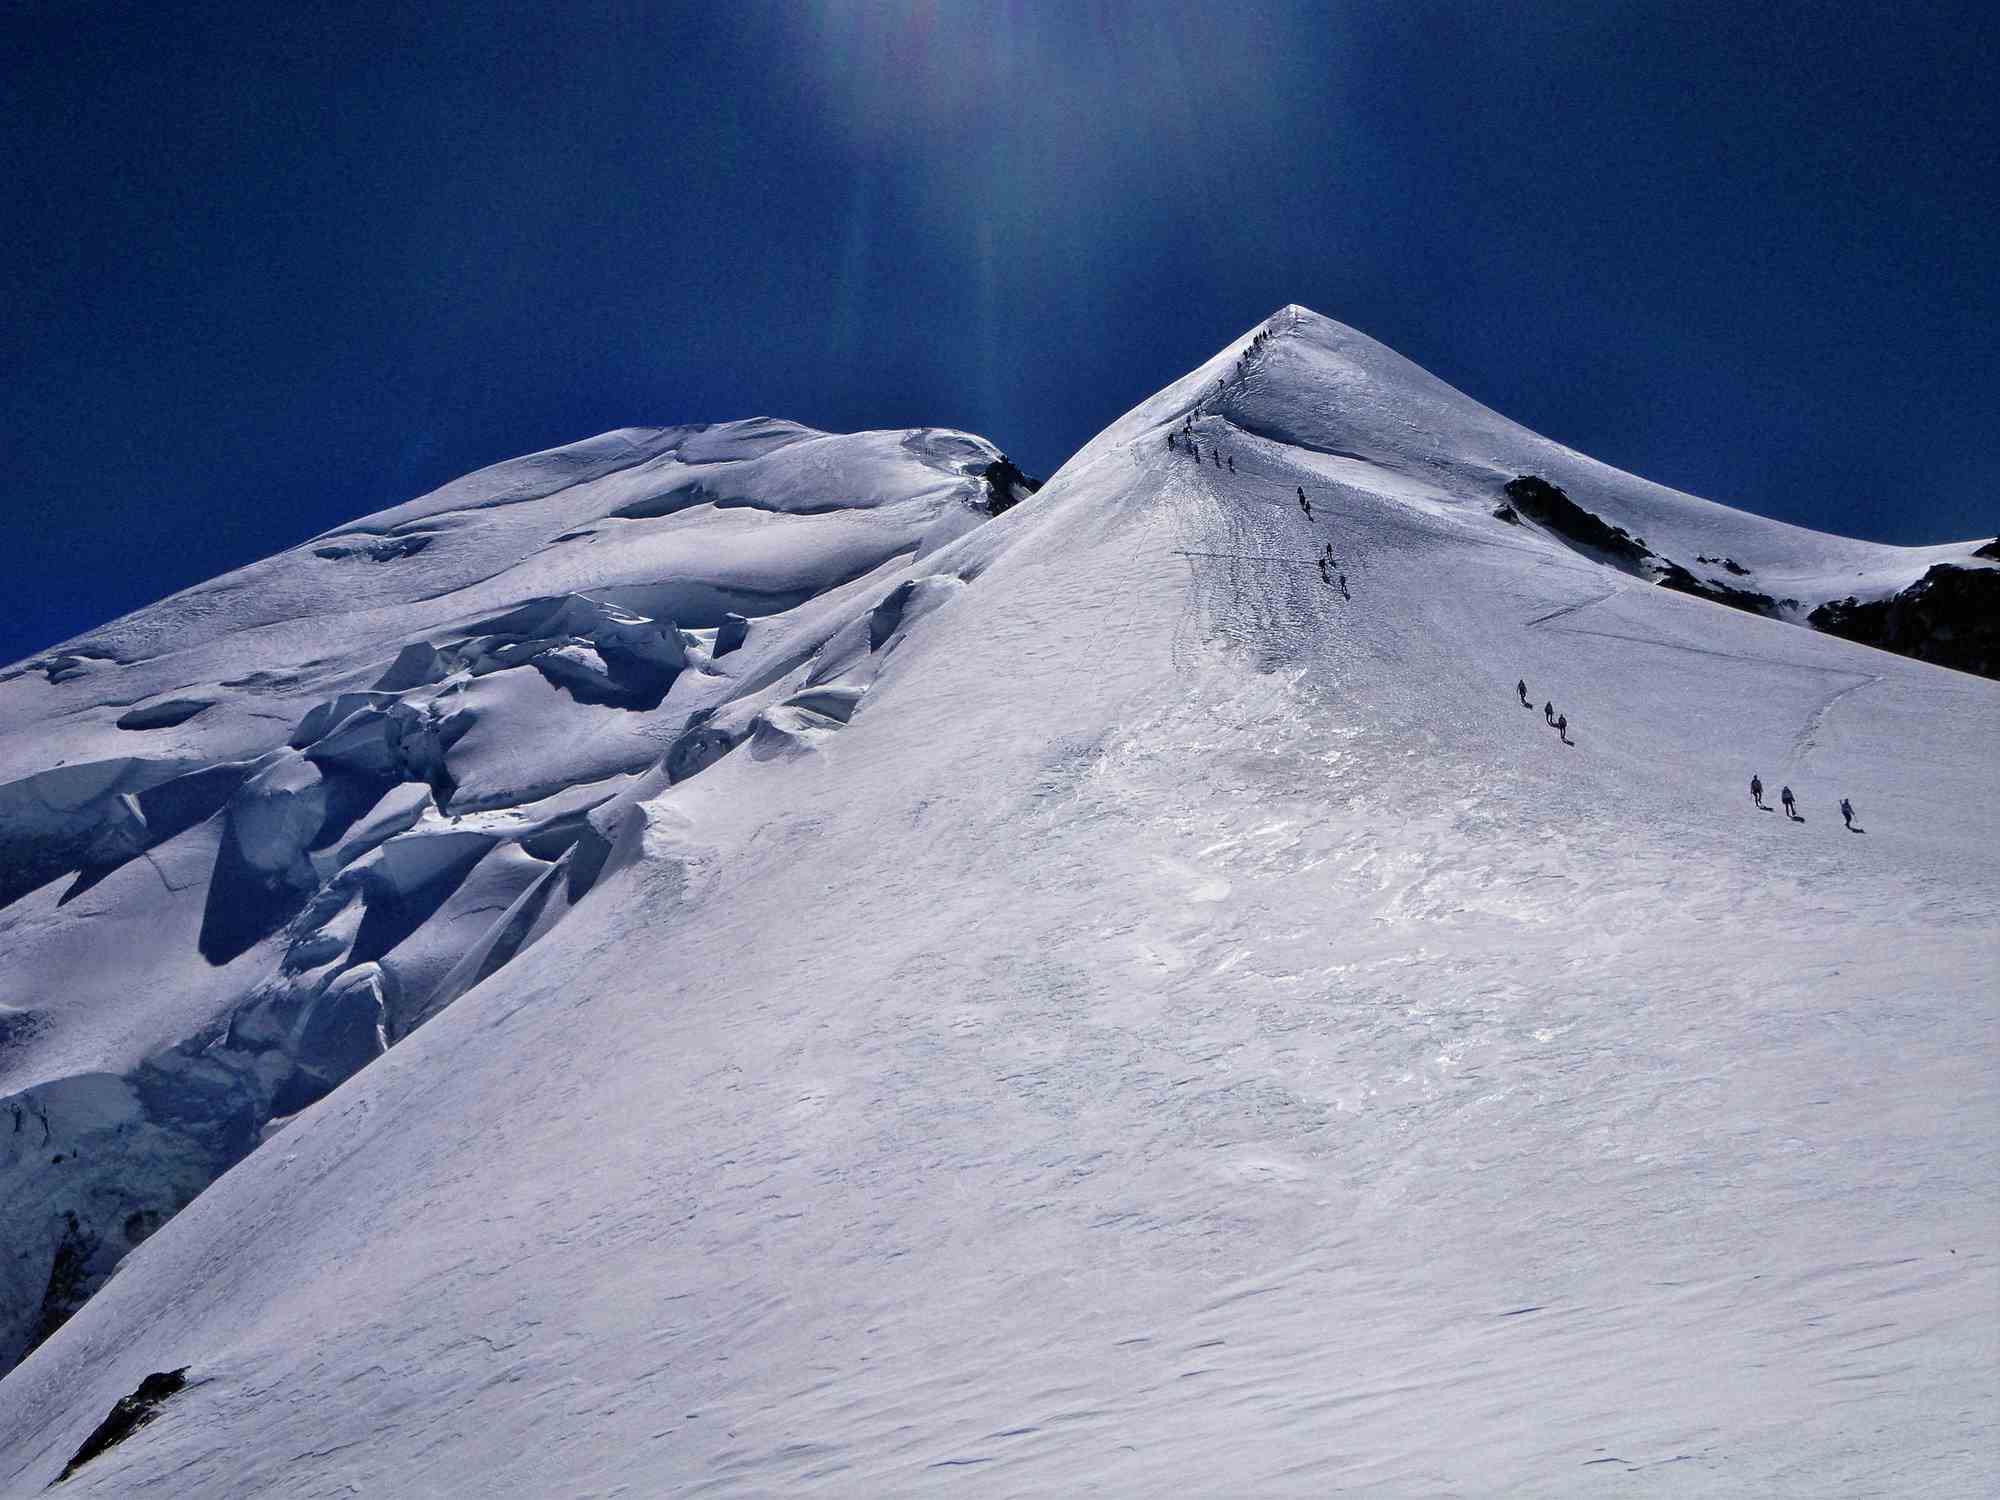 Cumbre del Mont Blanc 4810m desde el Refugio Vallot